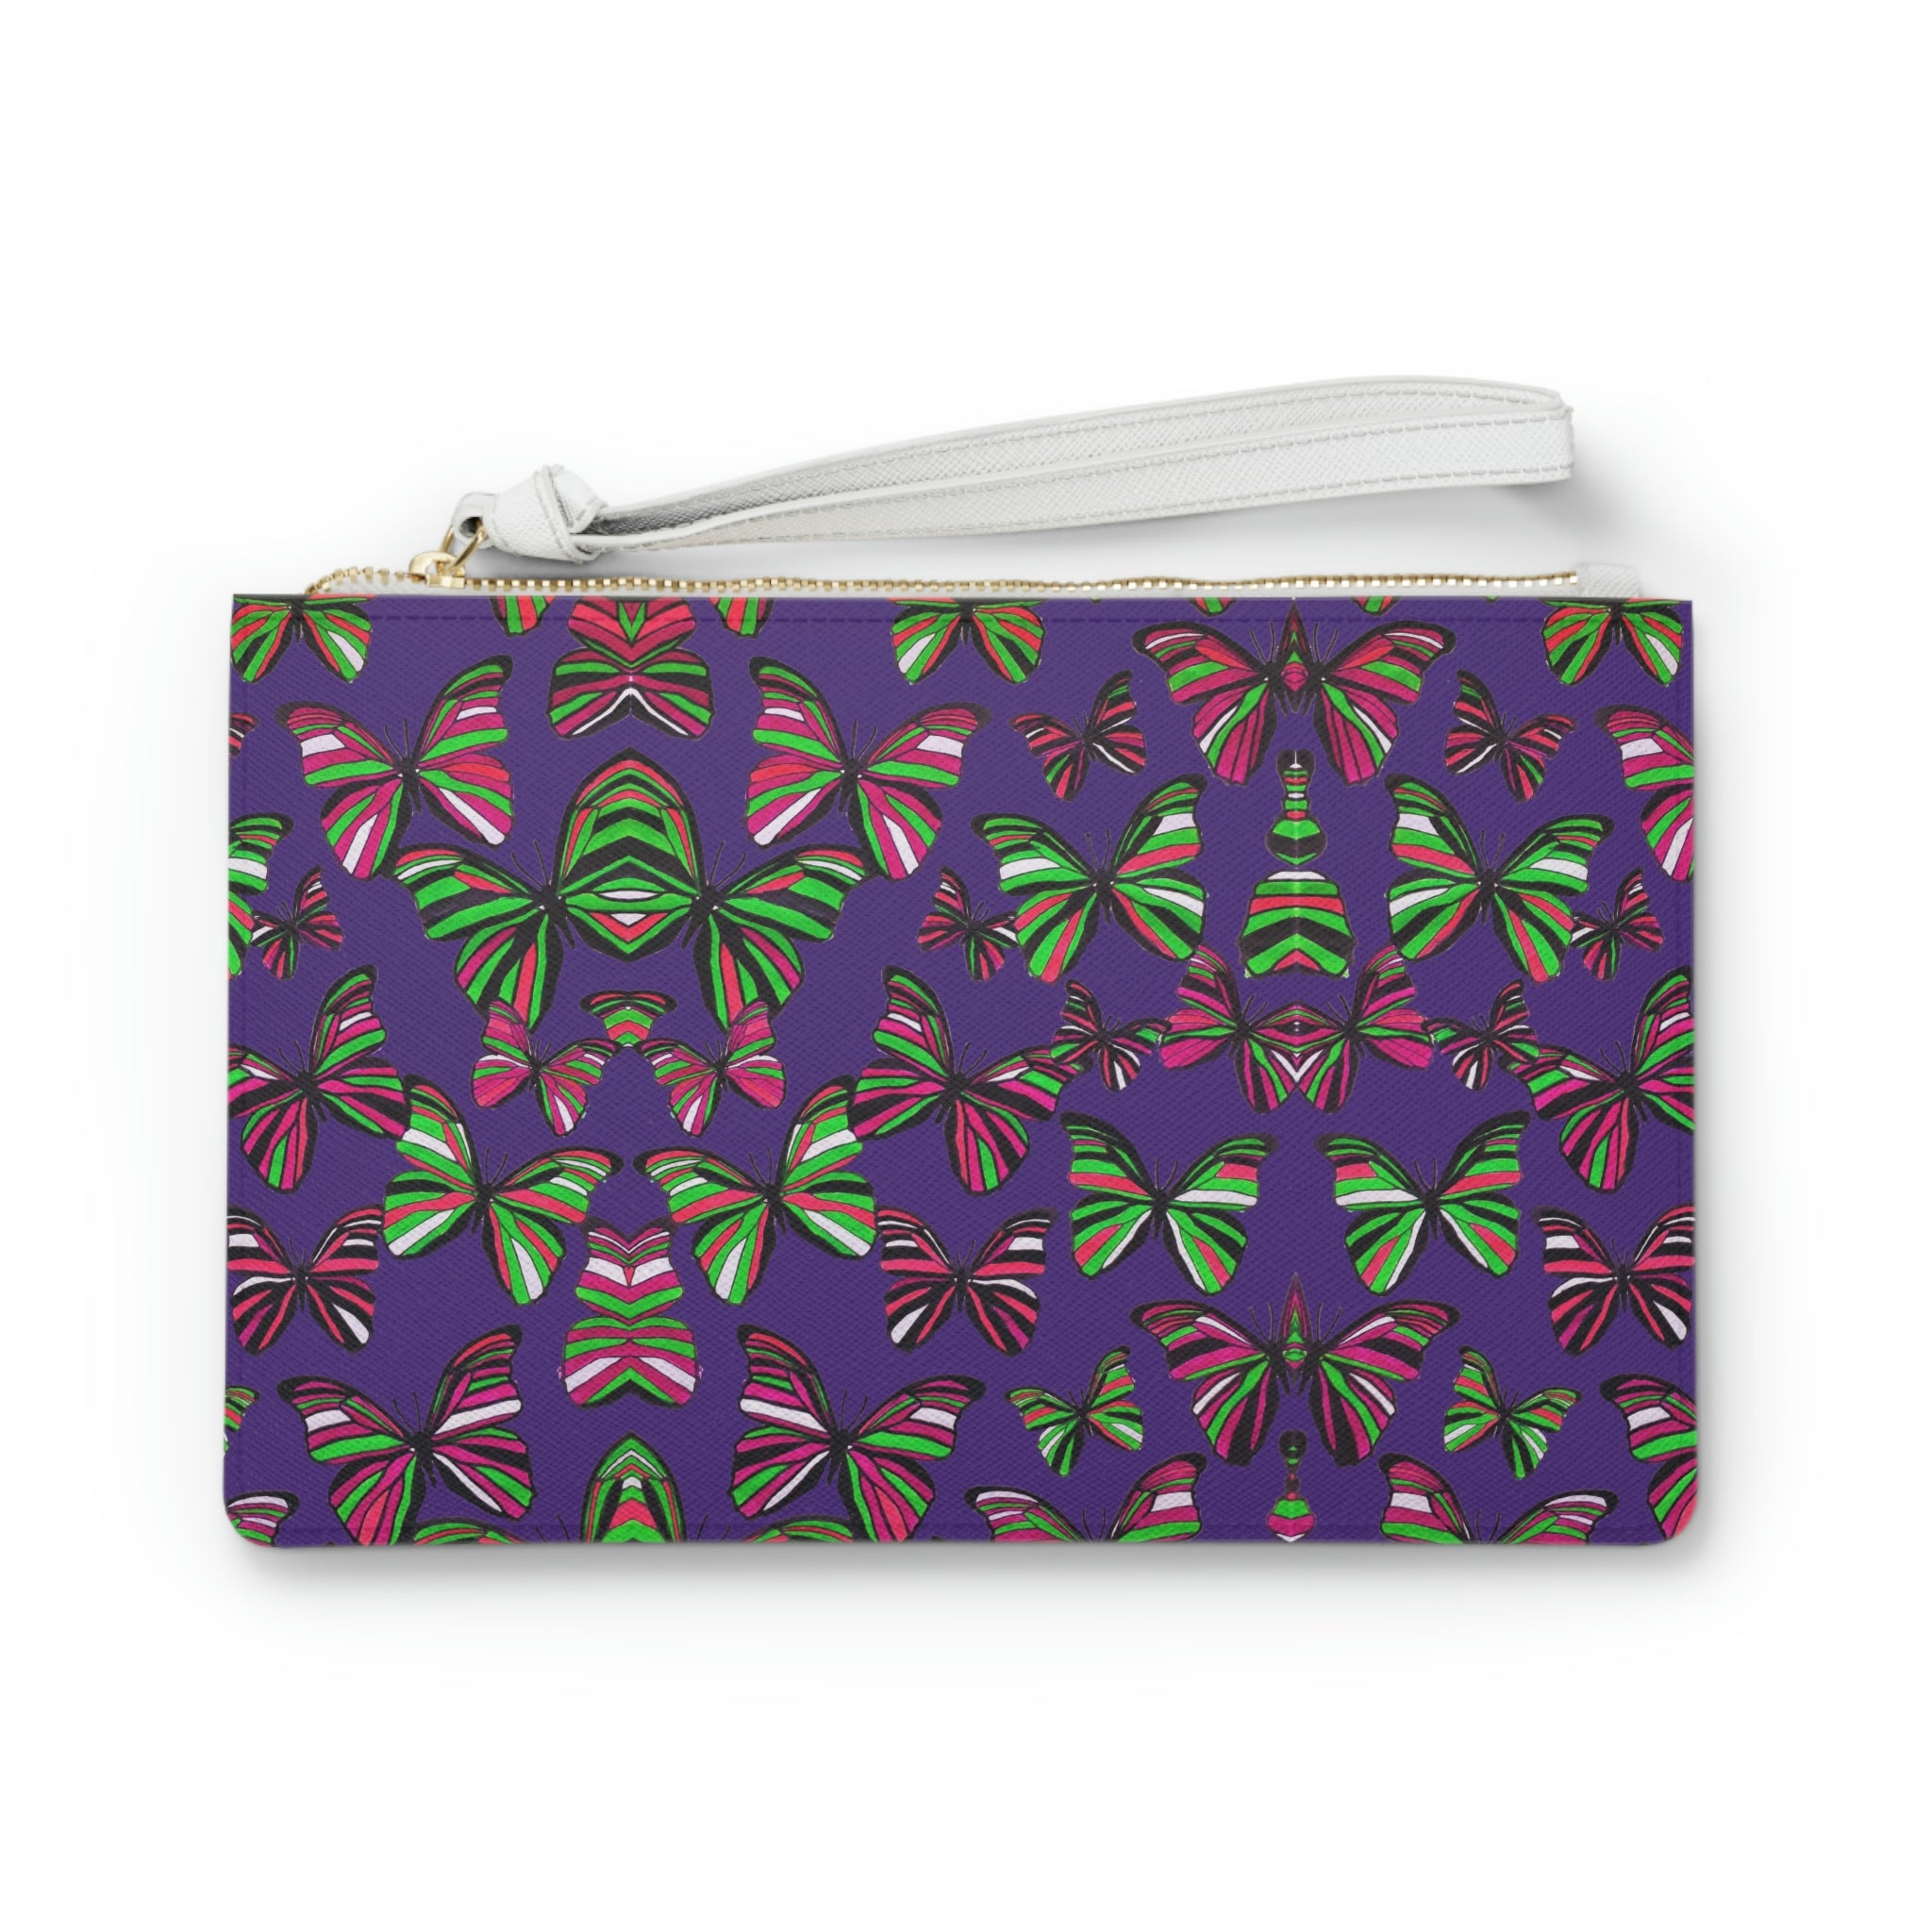 Purple Butterfly Print Clutch Bag